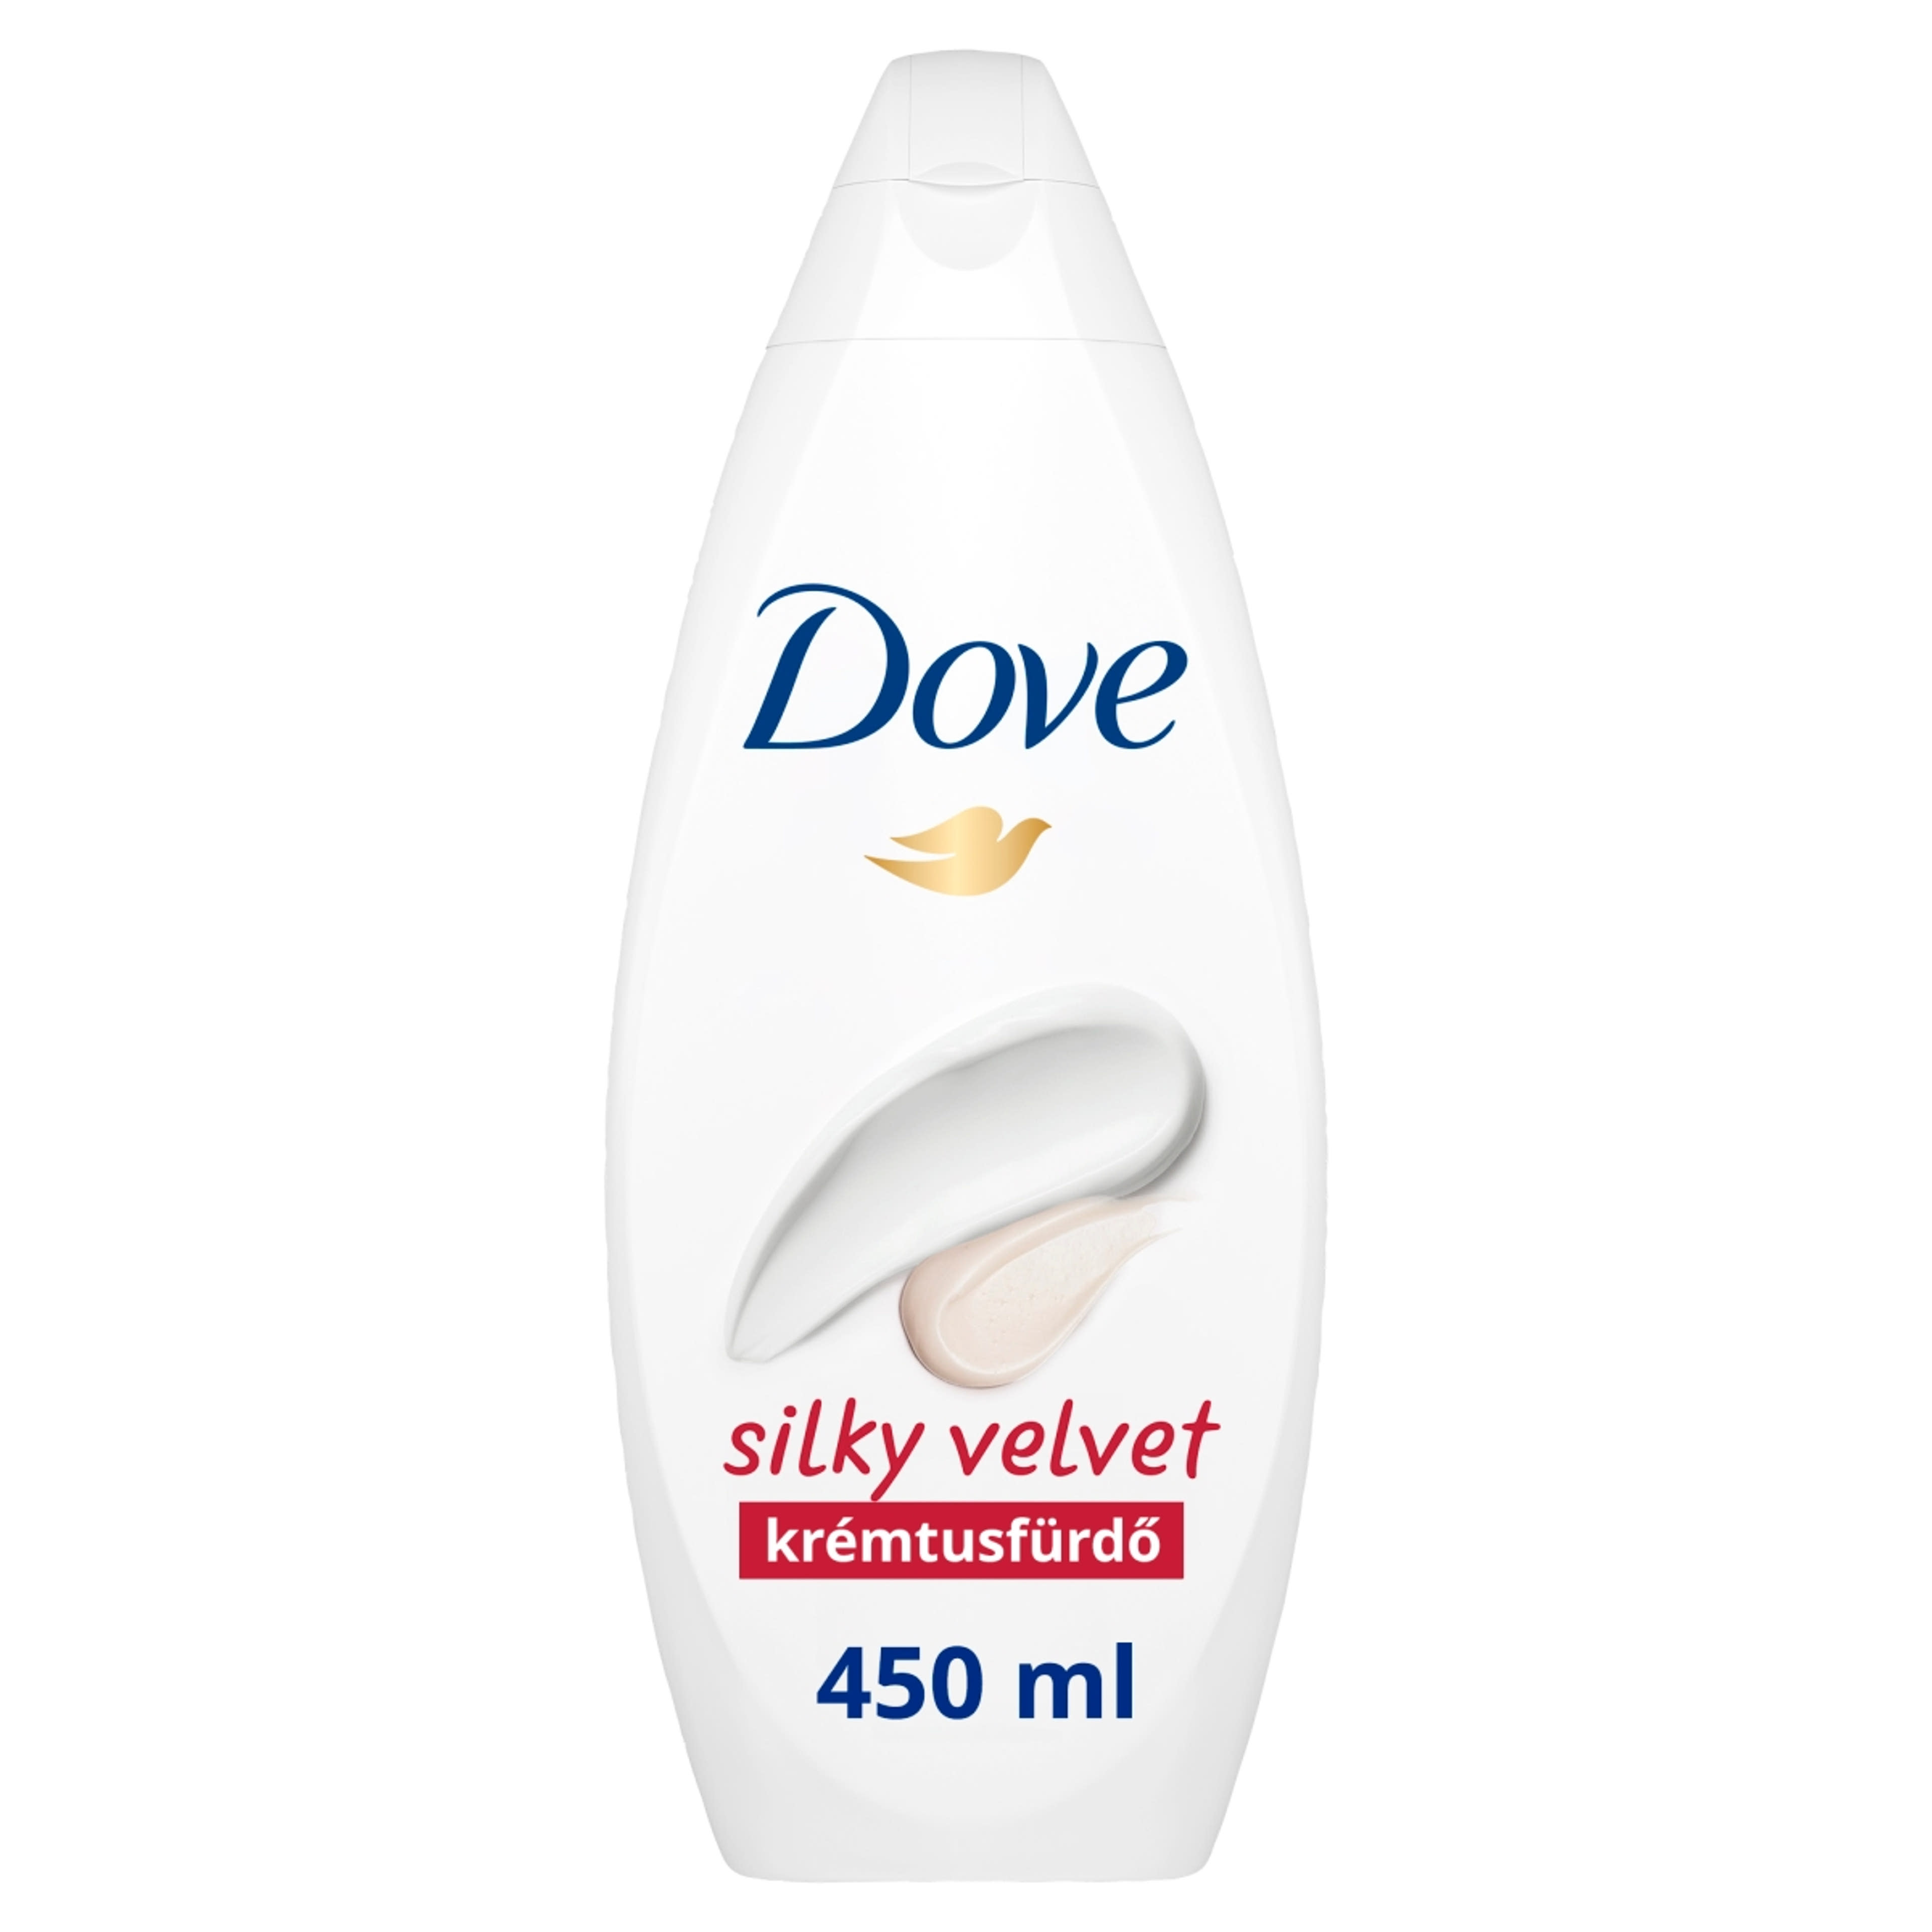 Dove Silky Velvet krémtusfürdő - 450 ml-2